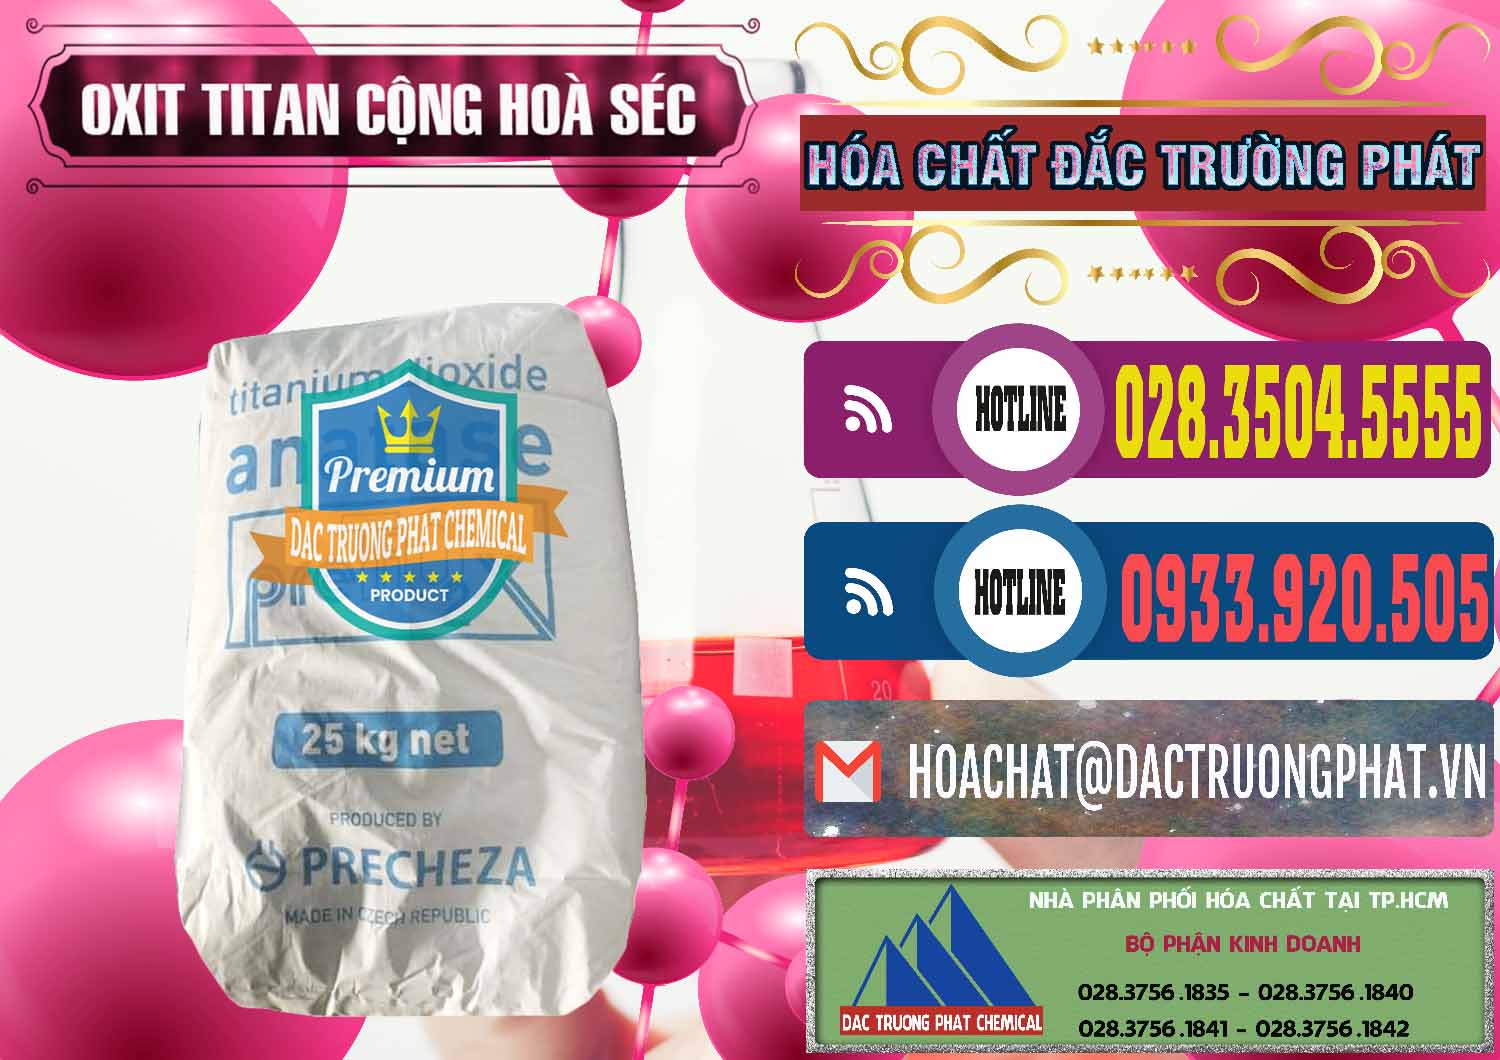 Đơn vị chuyên cung ứng - bán Oxit Titan KA100 – Tio2 Cộng Hòa Séc Czech Republic - 0407 - Cty chuyên bán & phân phối hóa chất tại TP.HCM - muabanhoachat.com.vn